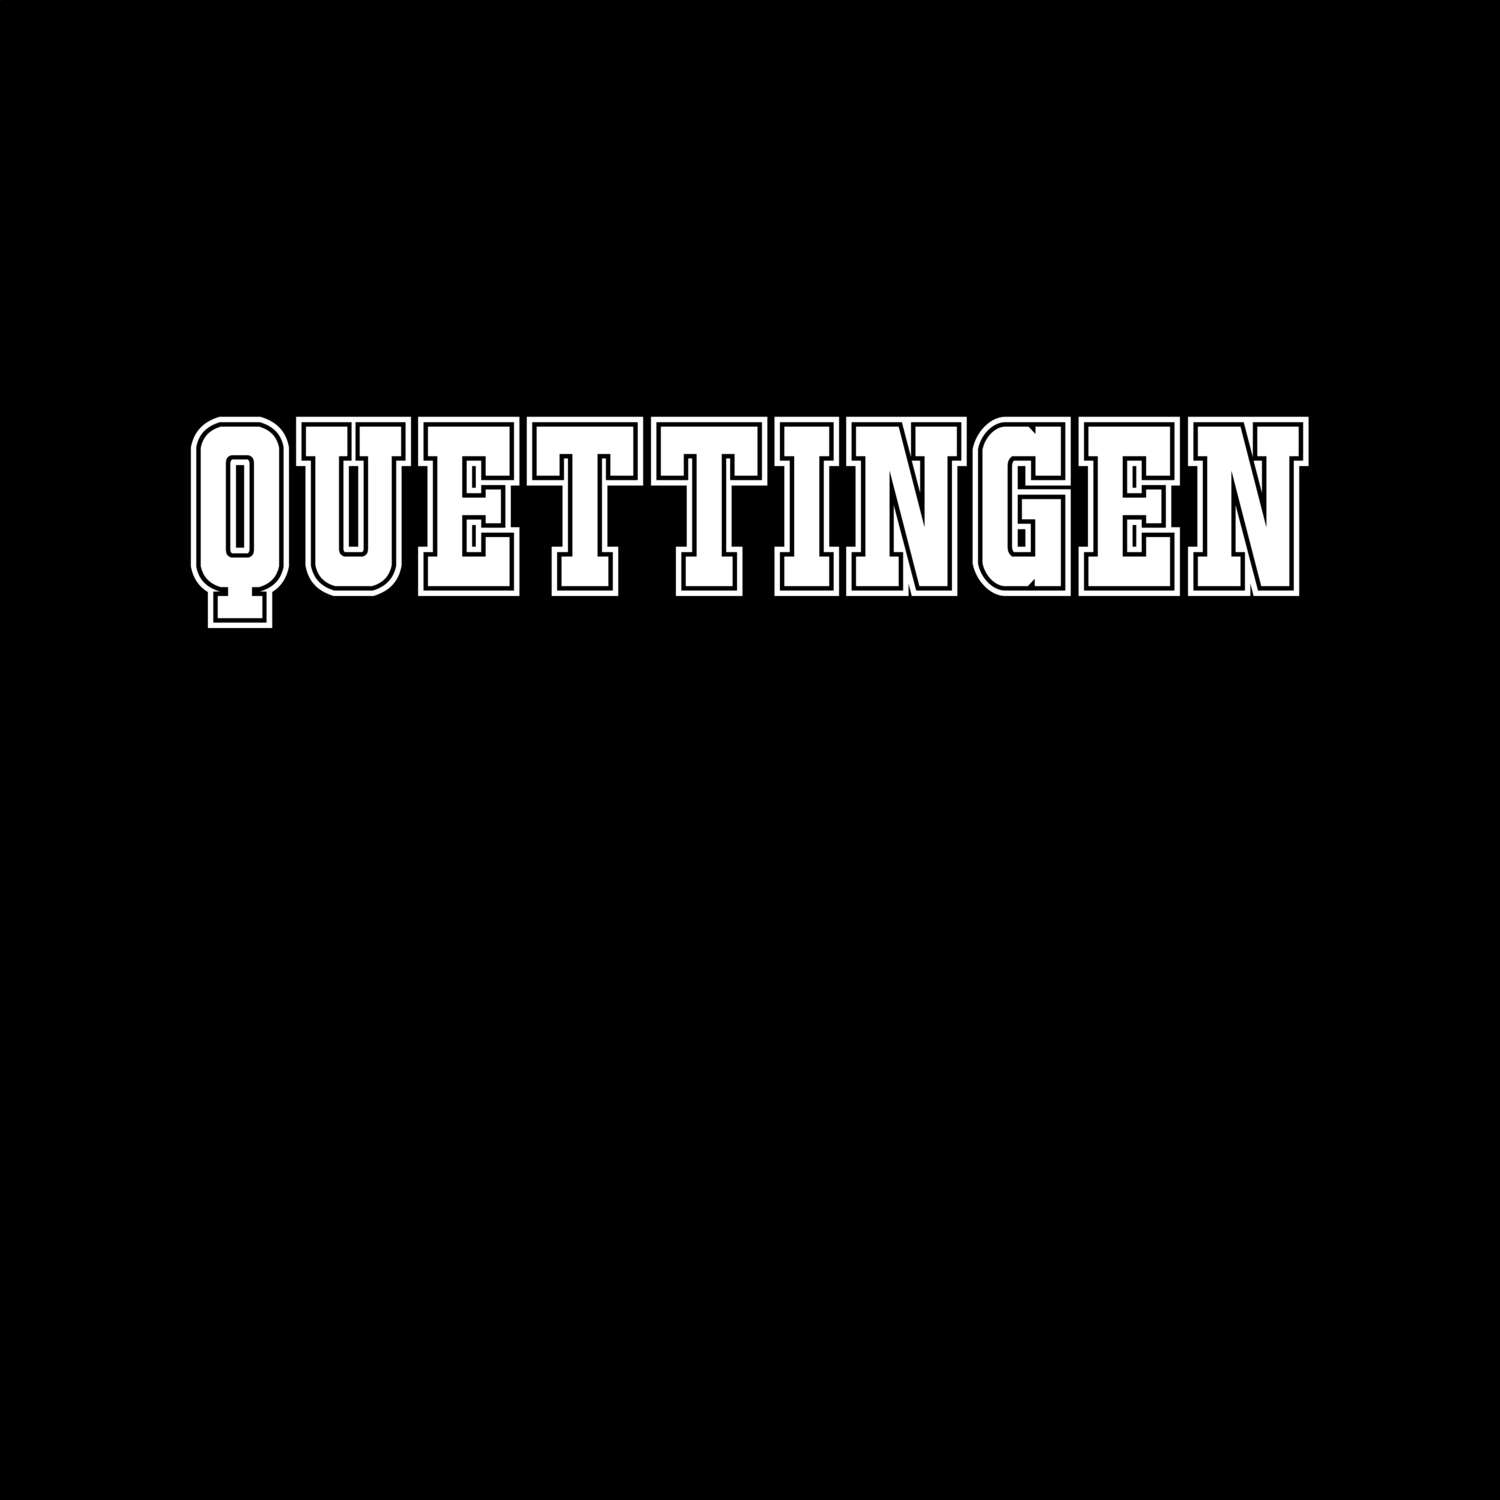 Quettingen T-Shirt »Classic«